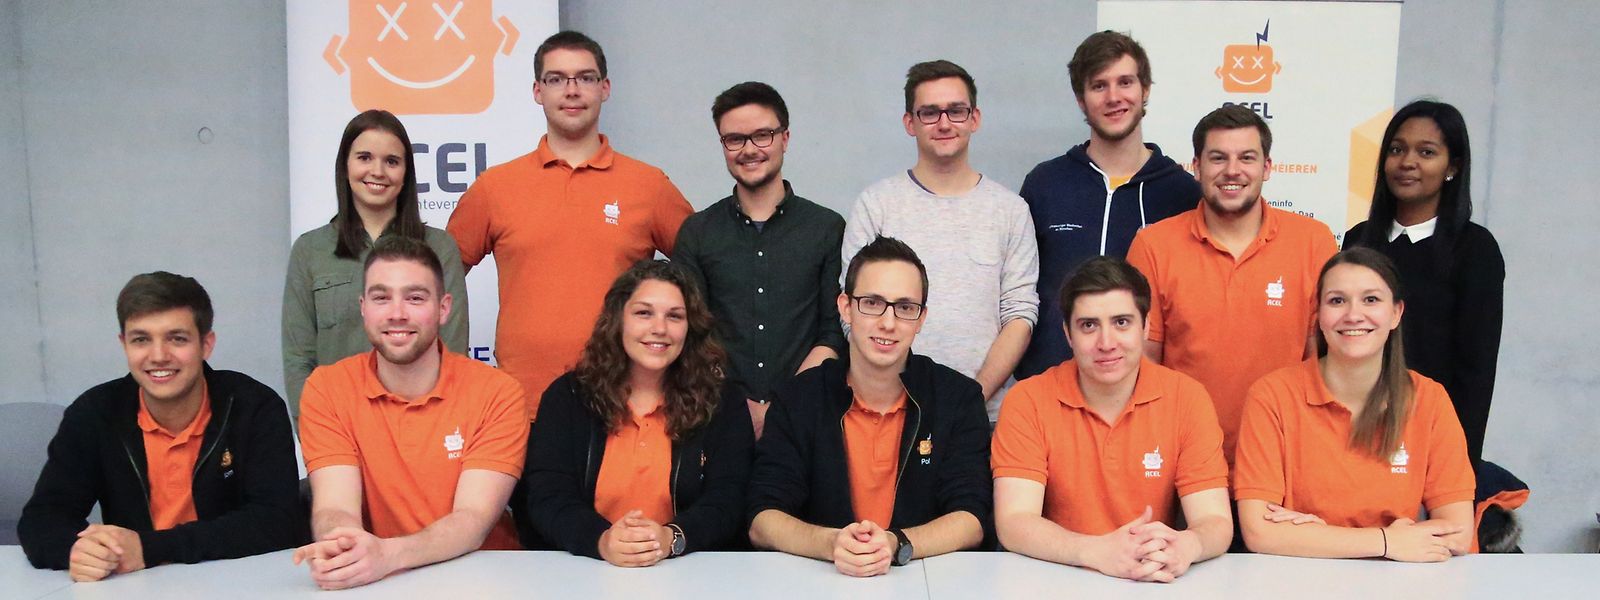 Der Dachverband der Luxemburger Studentenvereinigungen steht Studierenden und solchen, die es werden wollen, zur Seite